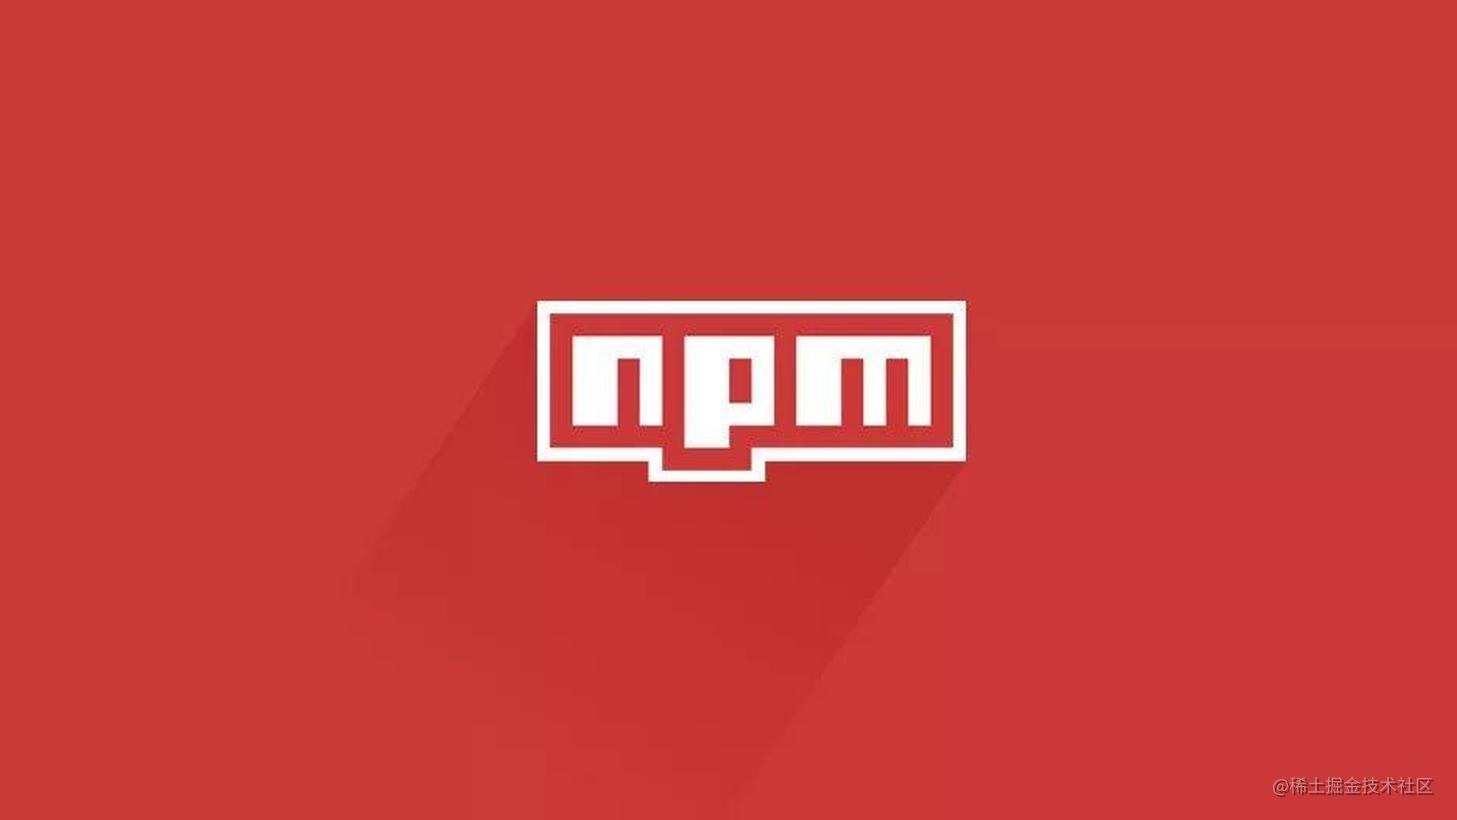 请将你的npm依赖版本锁定